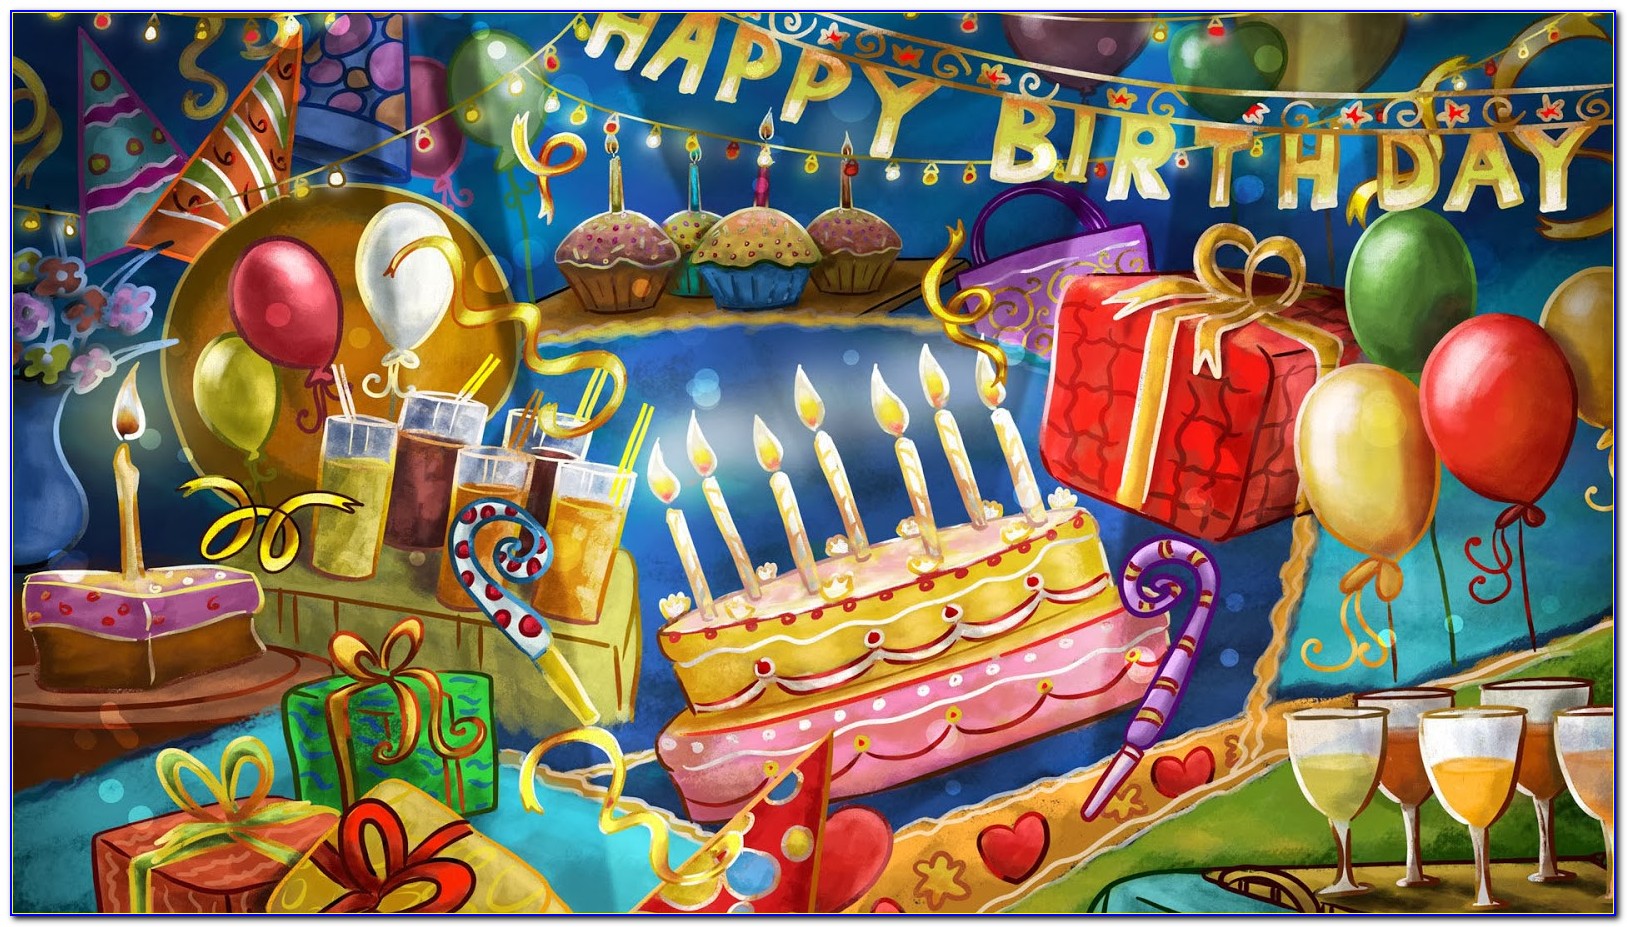 Happy Birthday Ecard Free Facebook